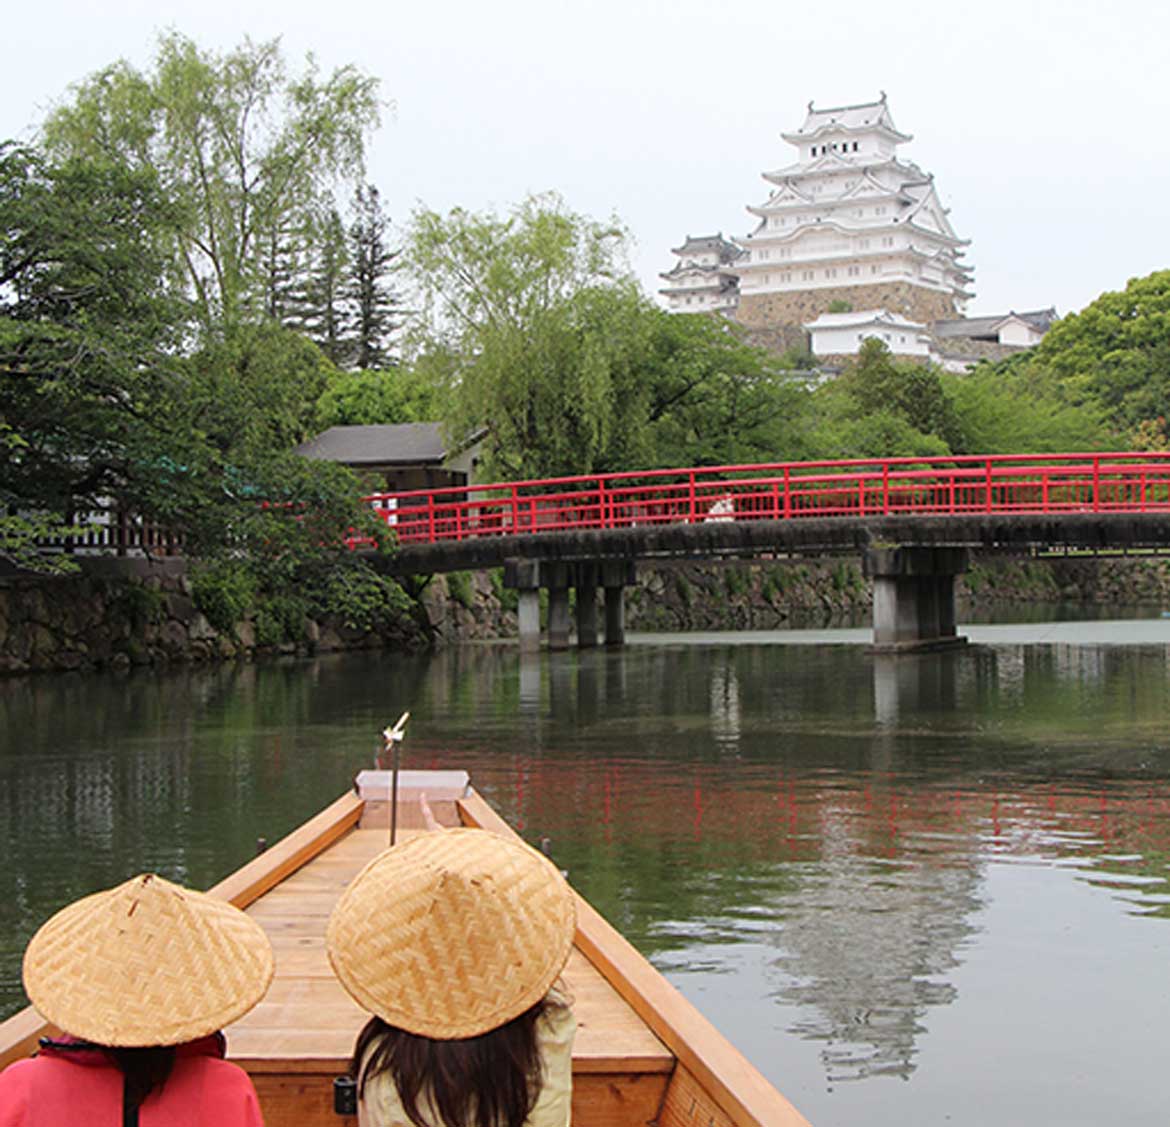 姫路城の美しい石垣を”こたつ舟”から楽しむ。「姫路城内堀めぐり」期間限定で開催